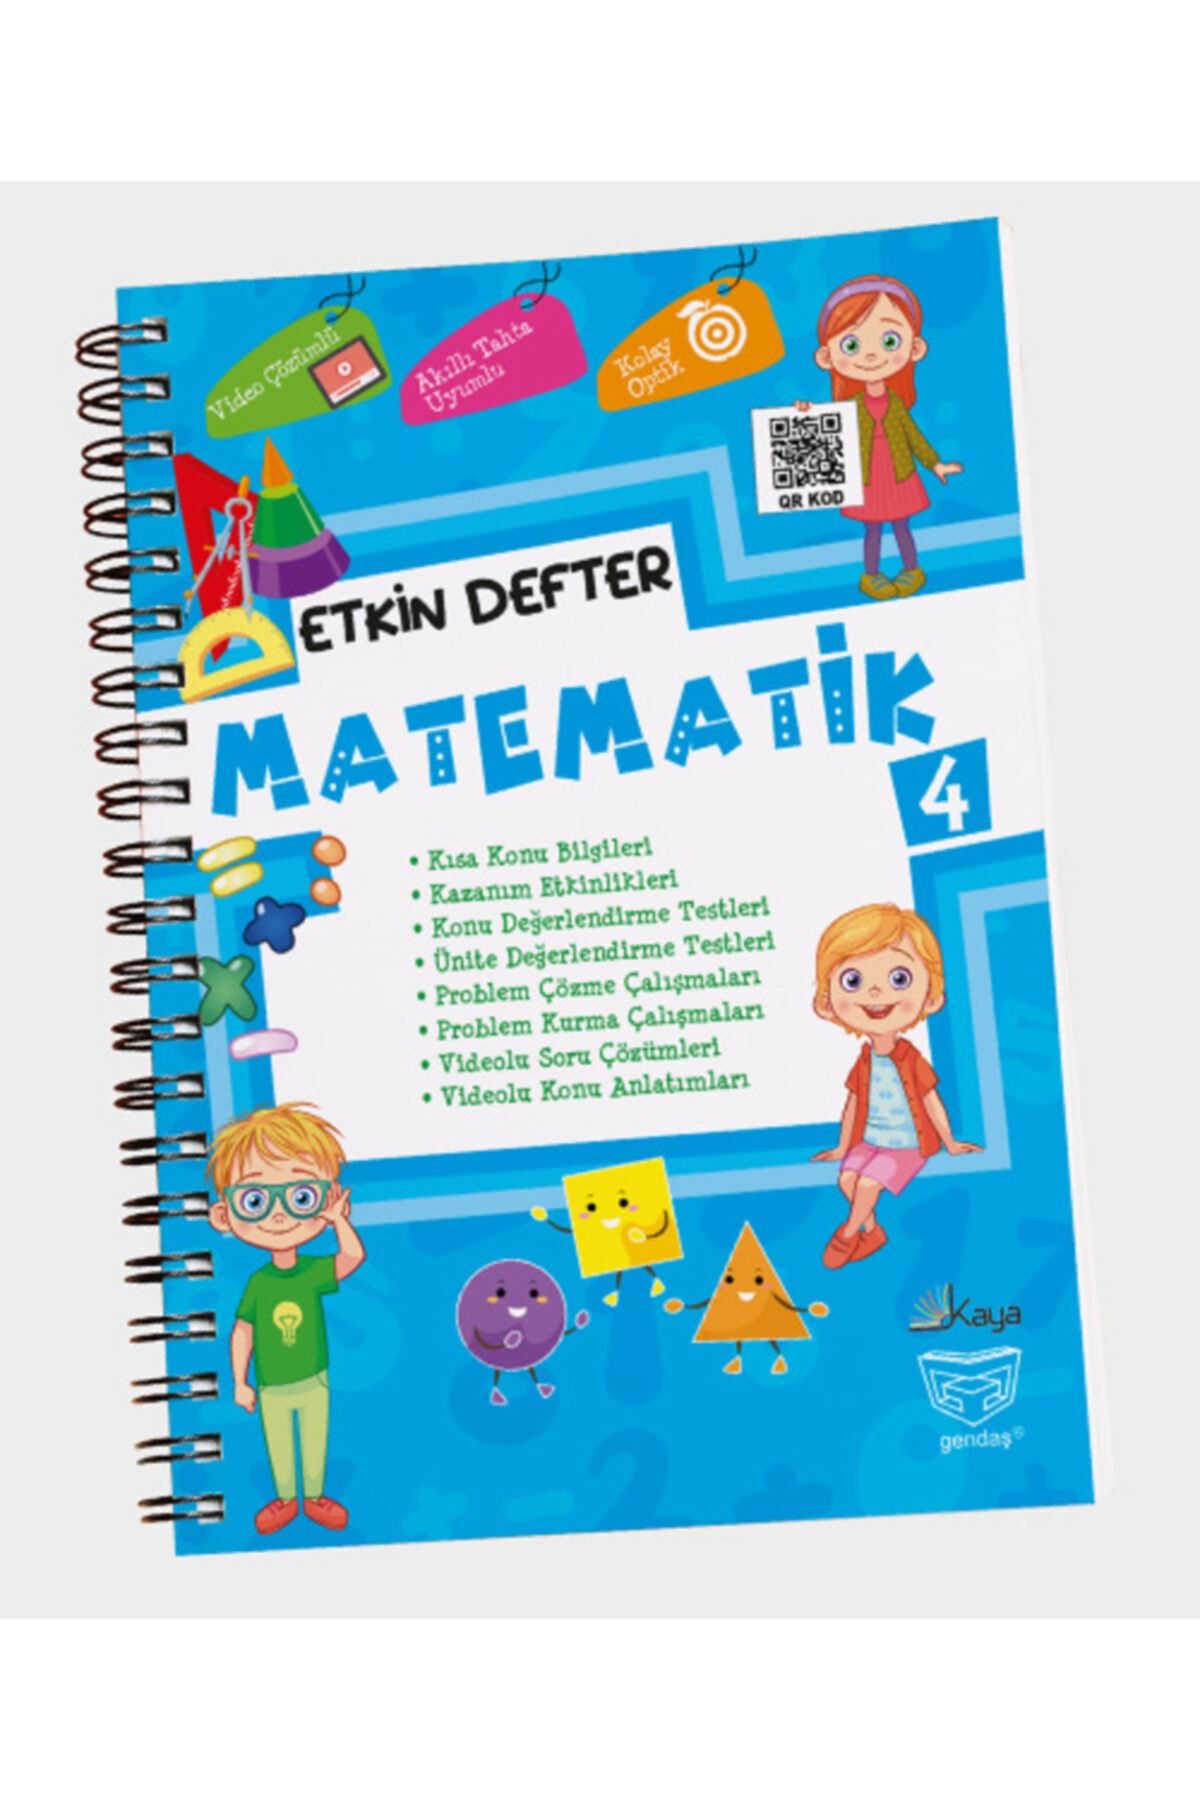 Gendaş Yayınları Etkin Defter Matematik 4.sınıf